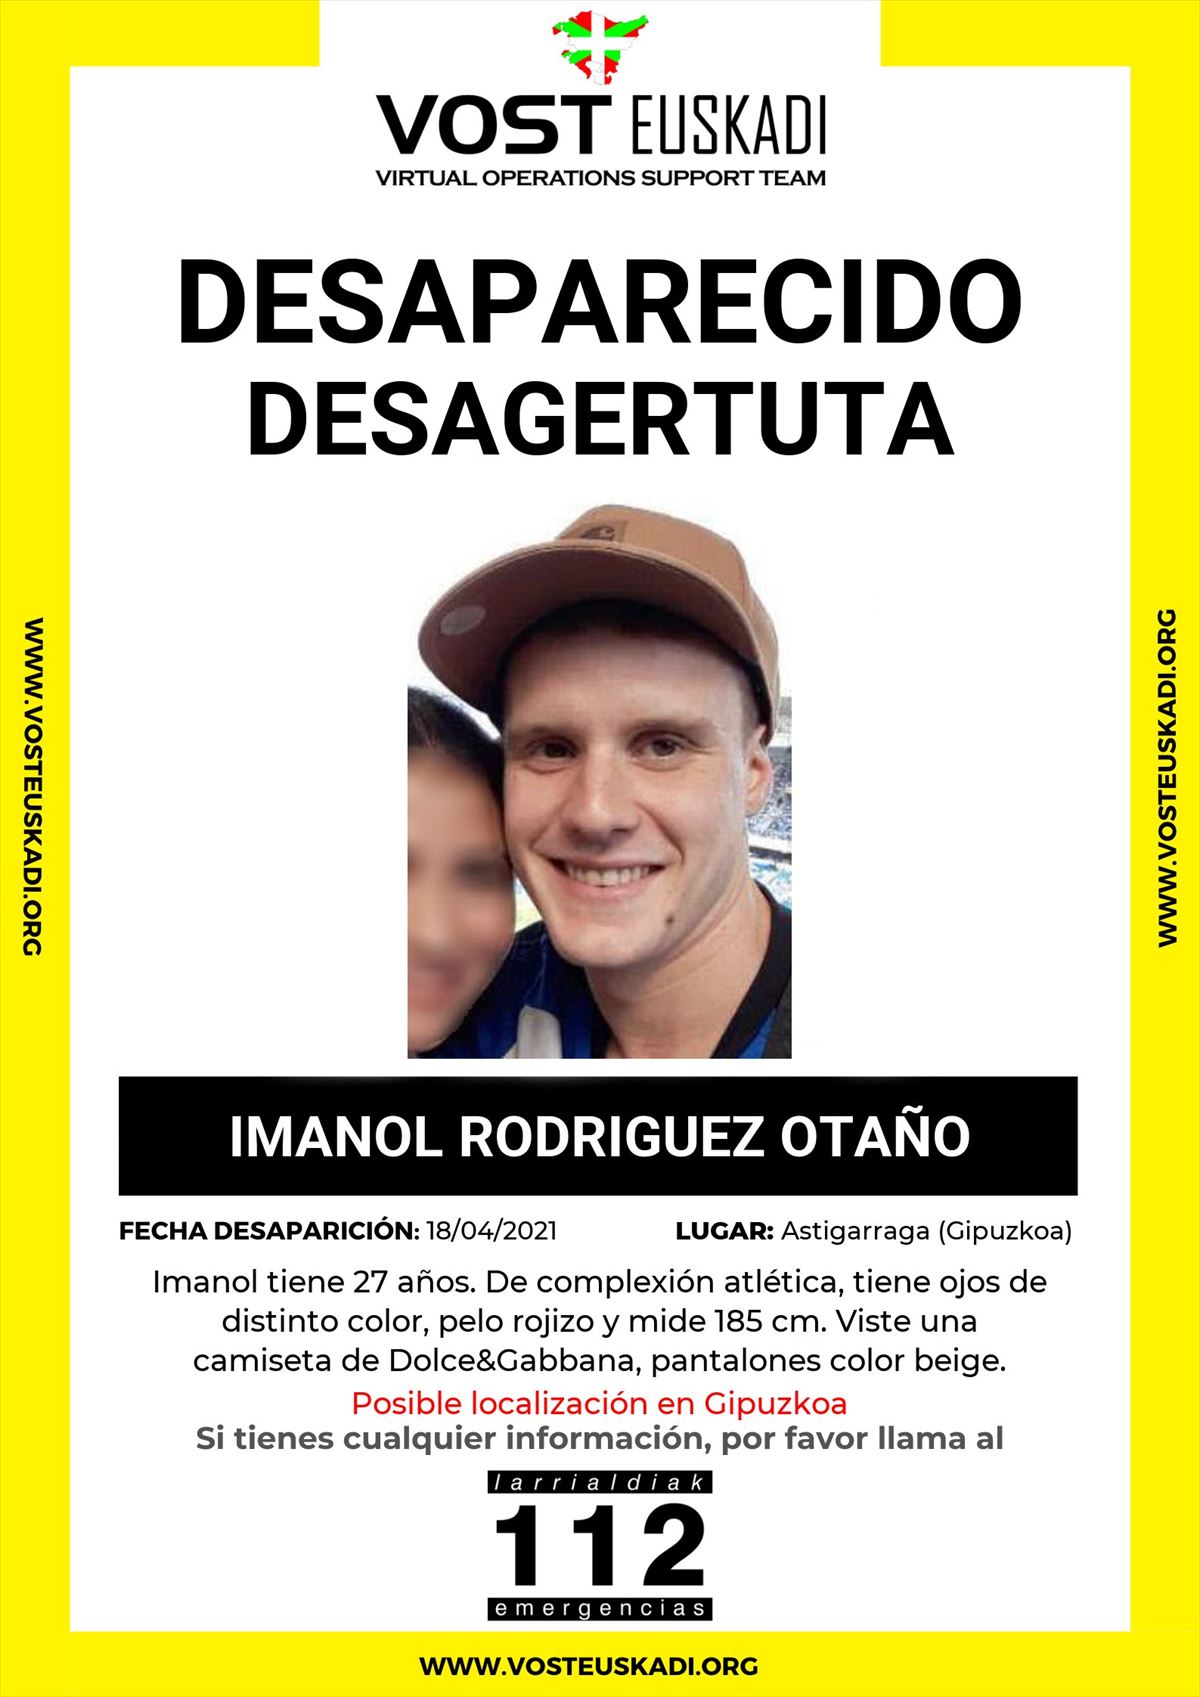 Imagen difundida del joven desaparecido en Astigarraga